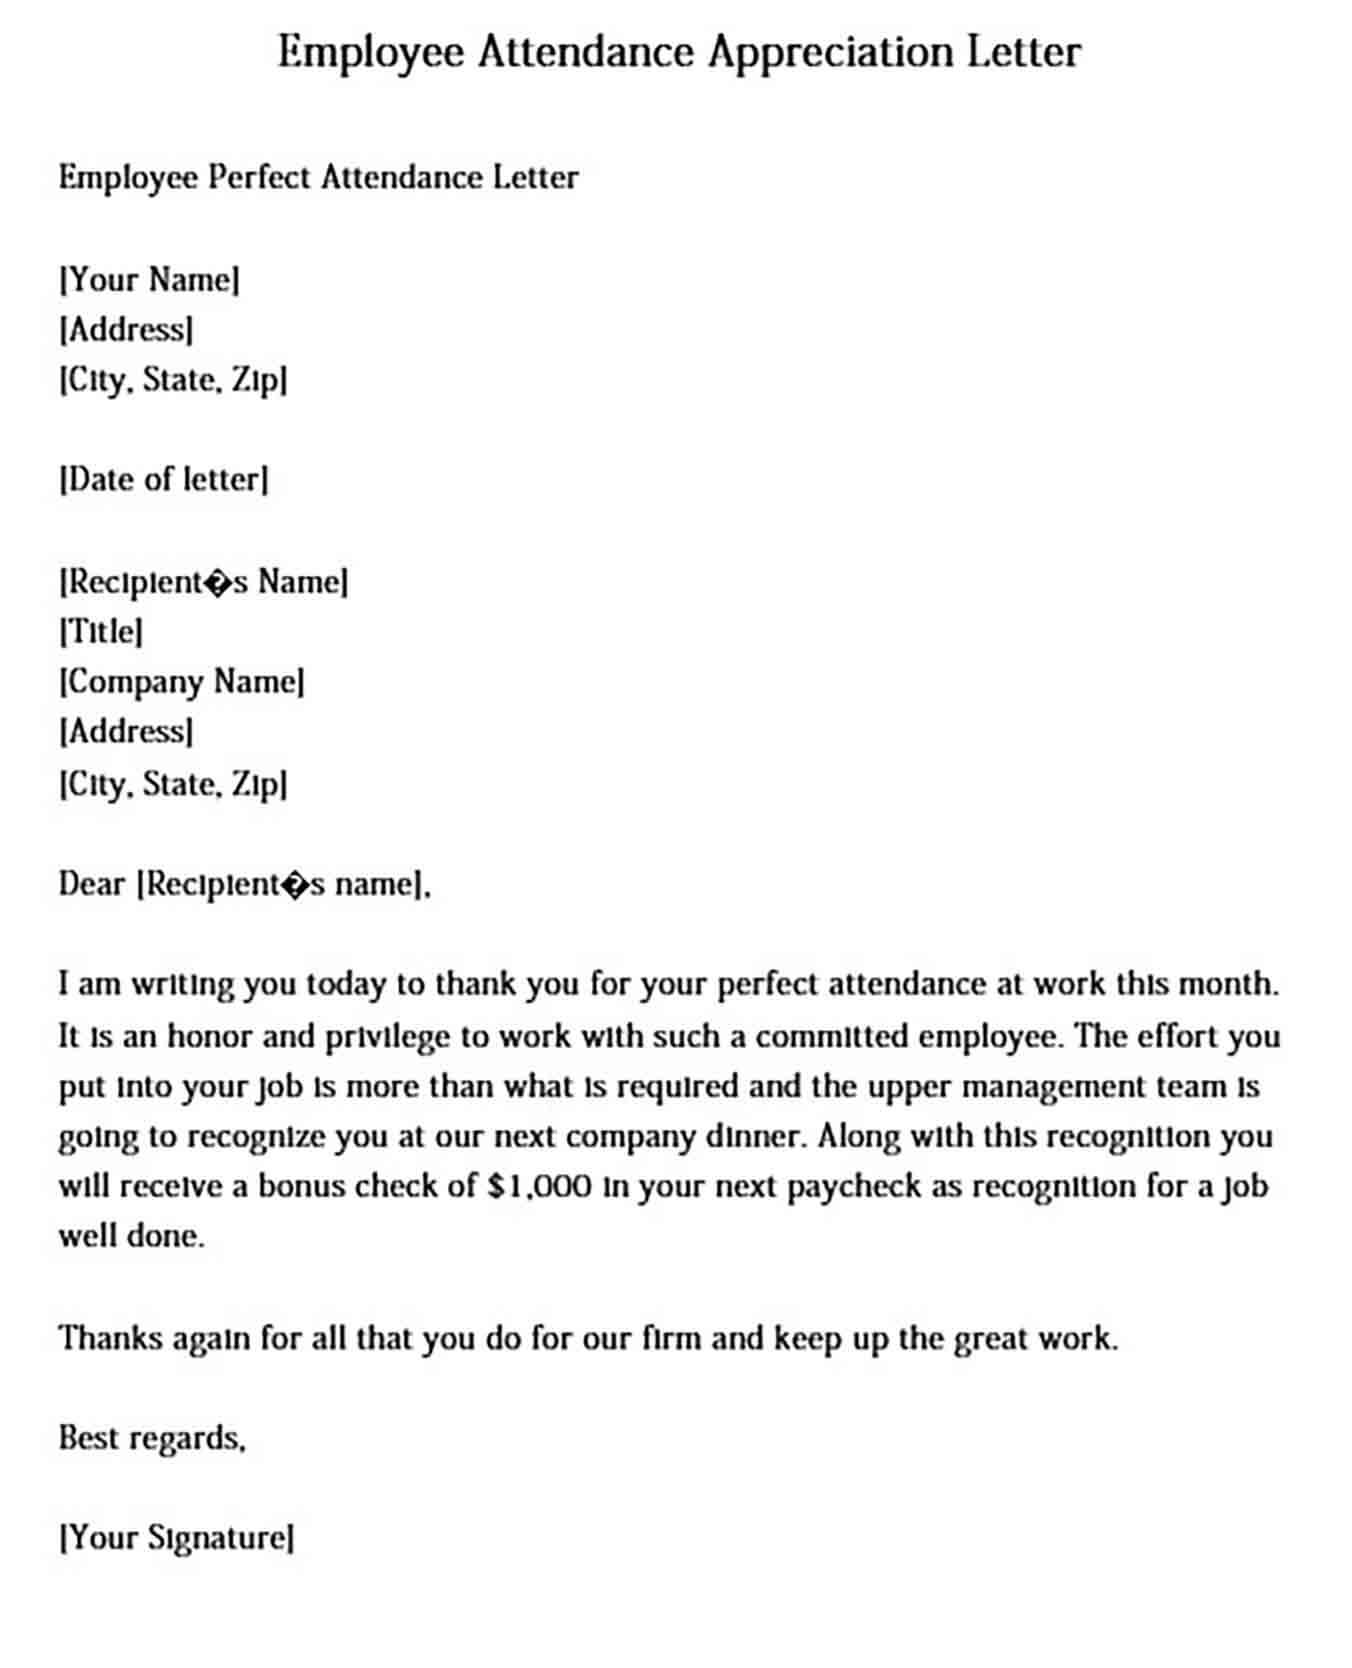 Employee Attendance Appreciation Letter